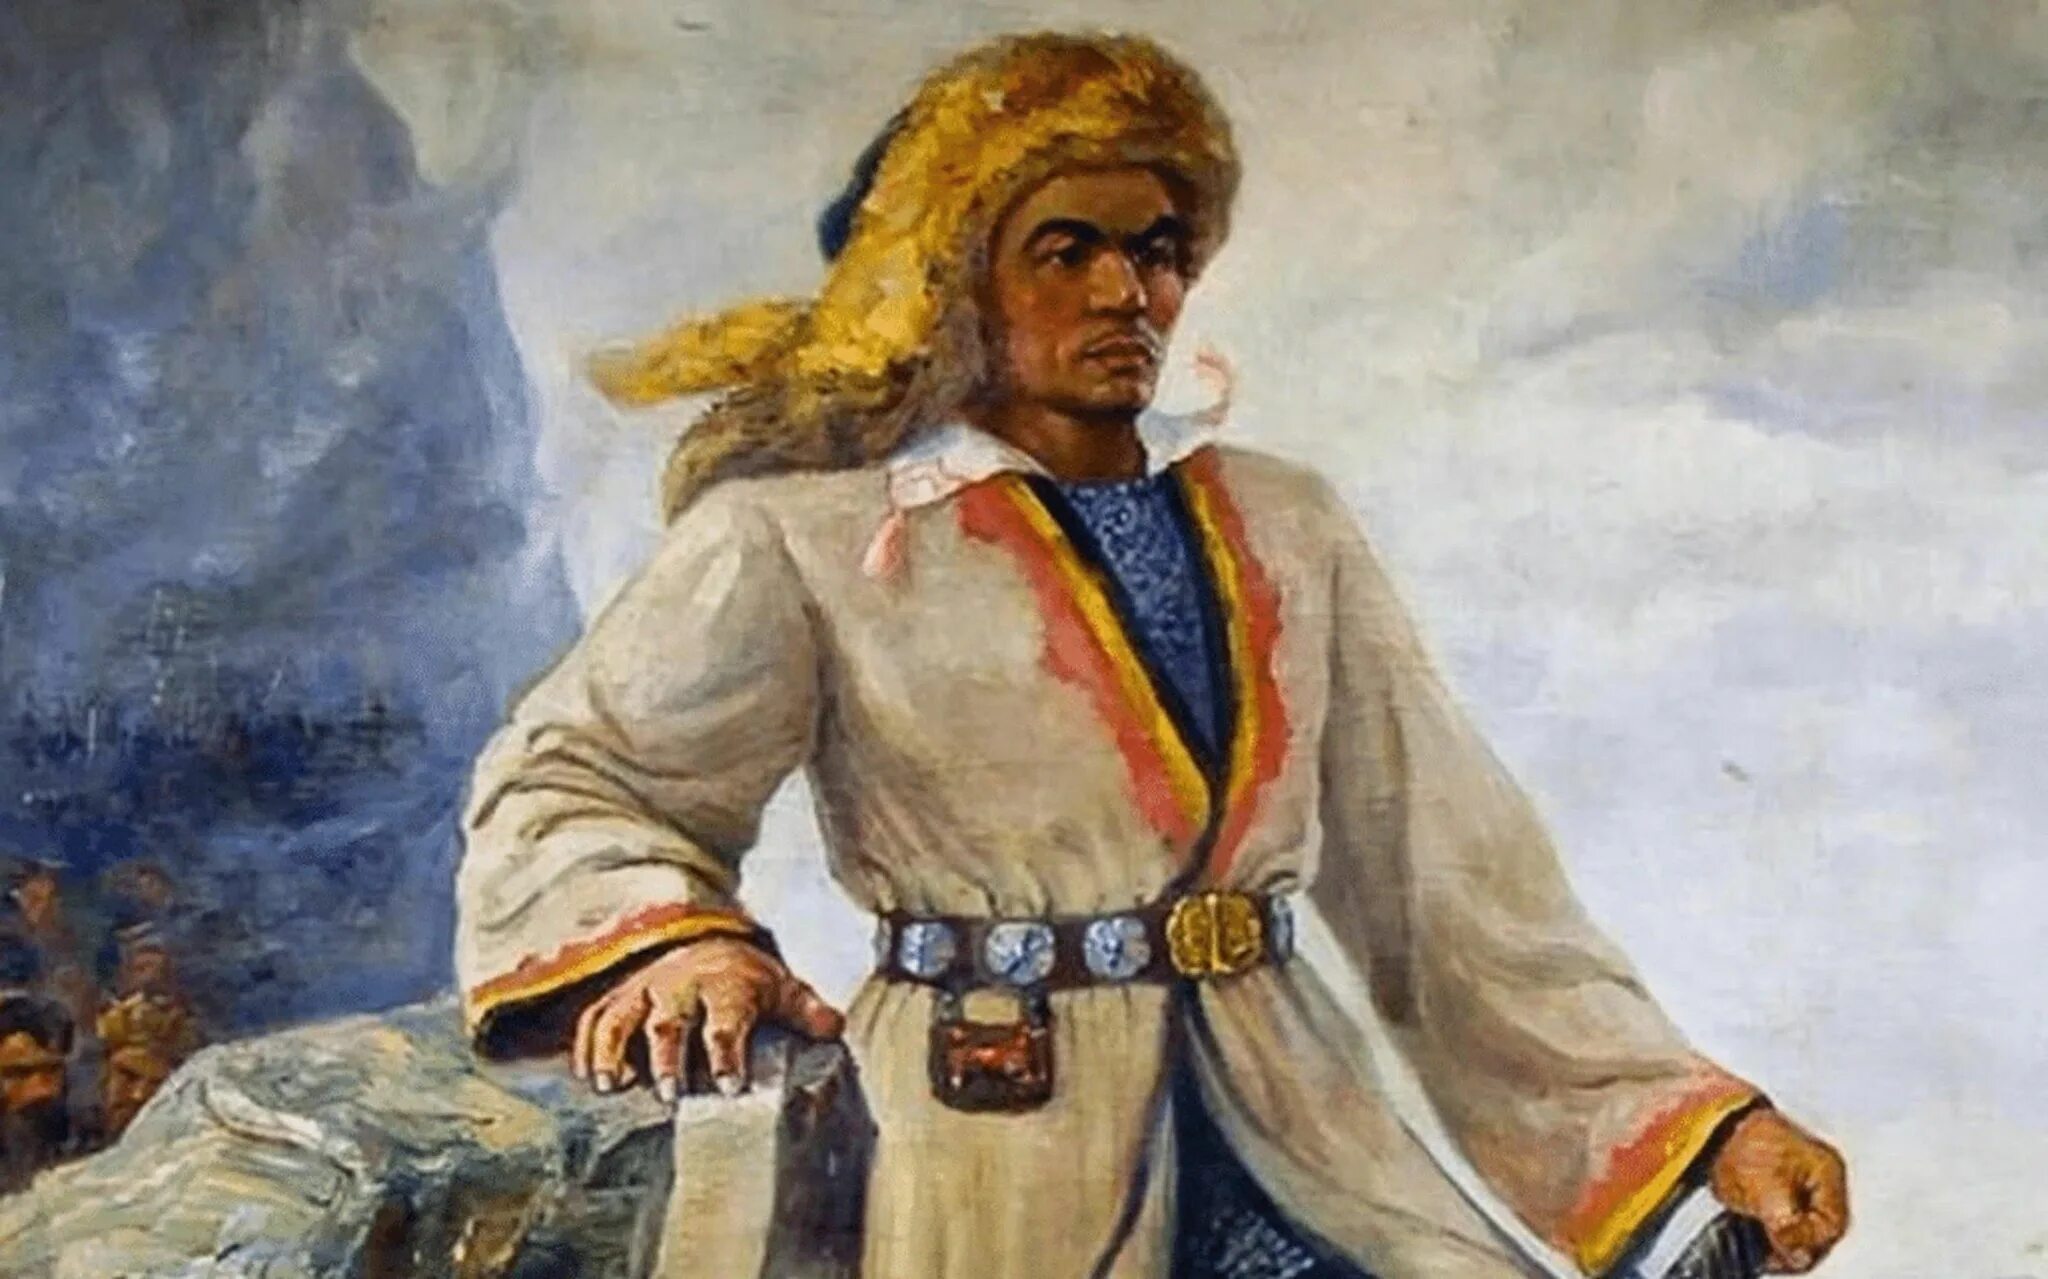 Салават Юлаев Башкирский национальный герой. Салават Юлаев герой башкирского народа. Национальный герой солдат Юлаев. Салават Юлаев 1773-1775.